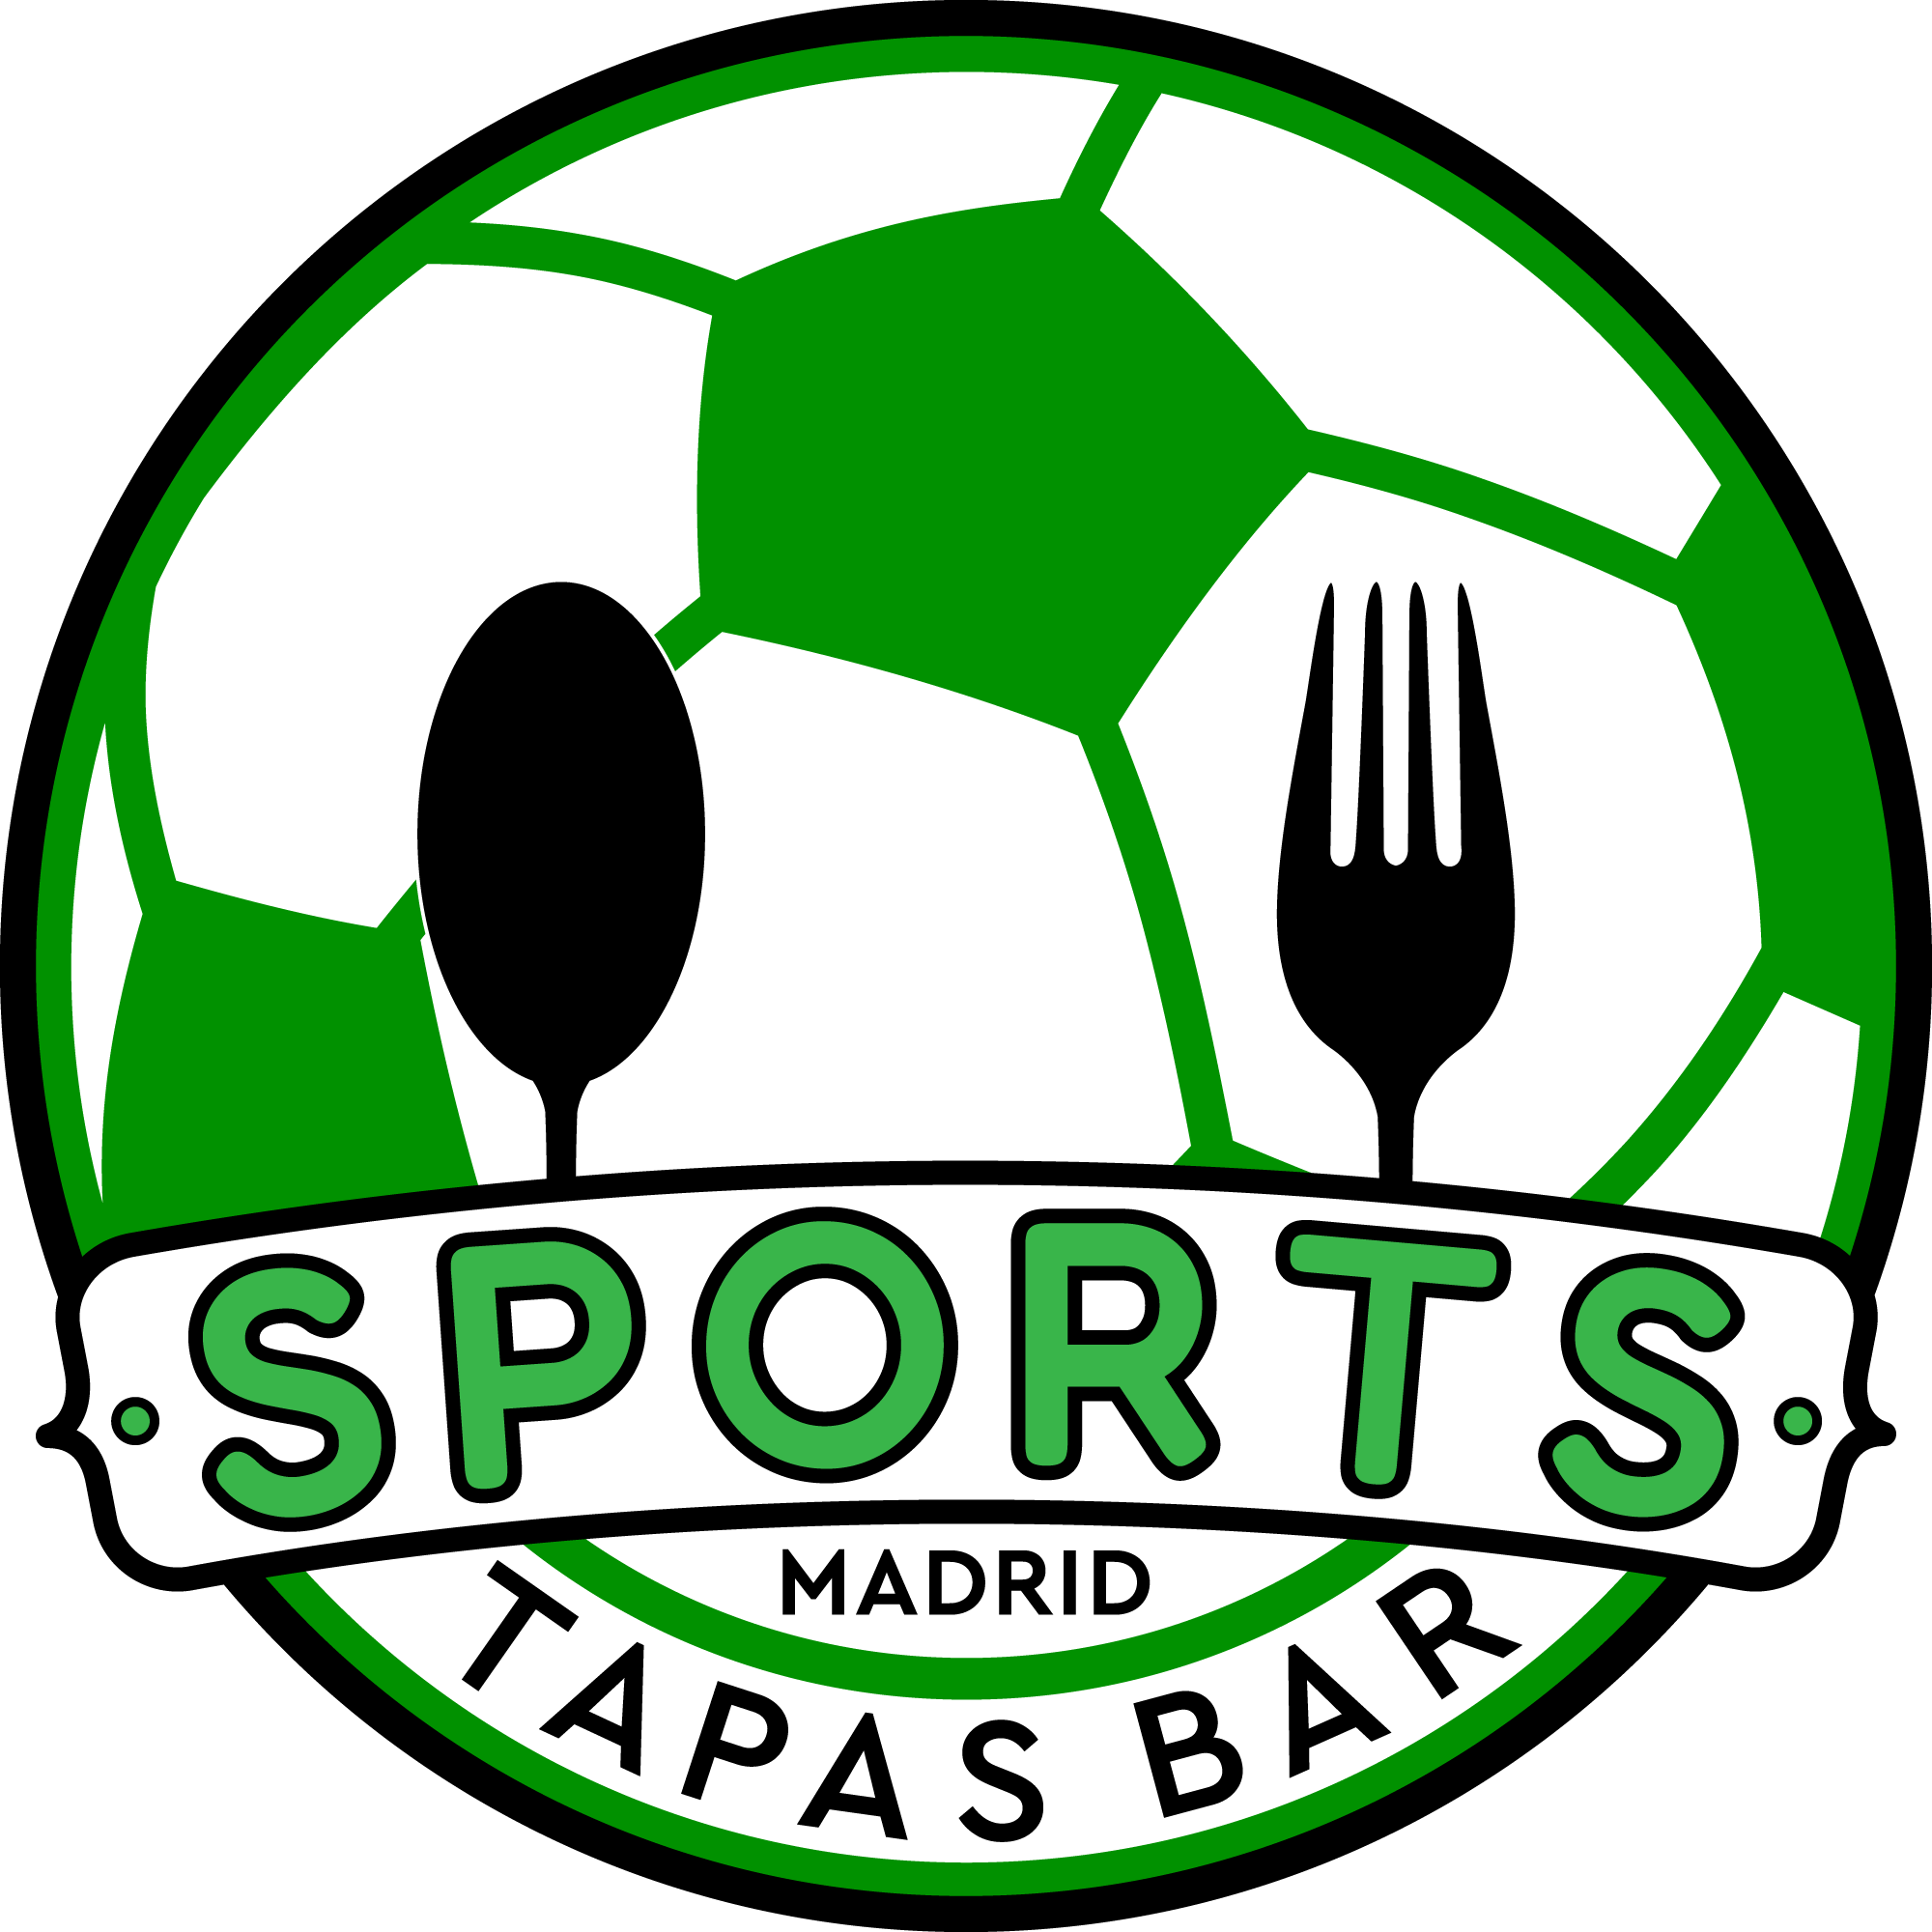 NFL Madrid Tapas Bar